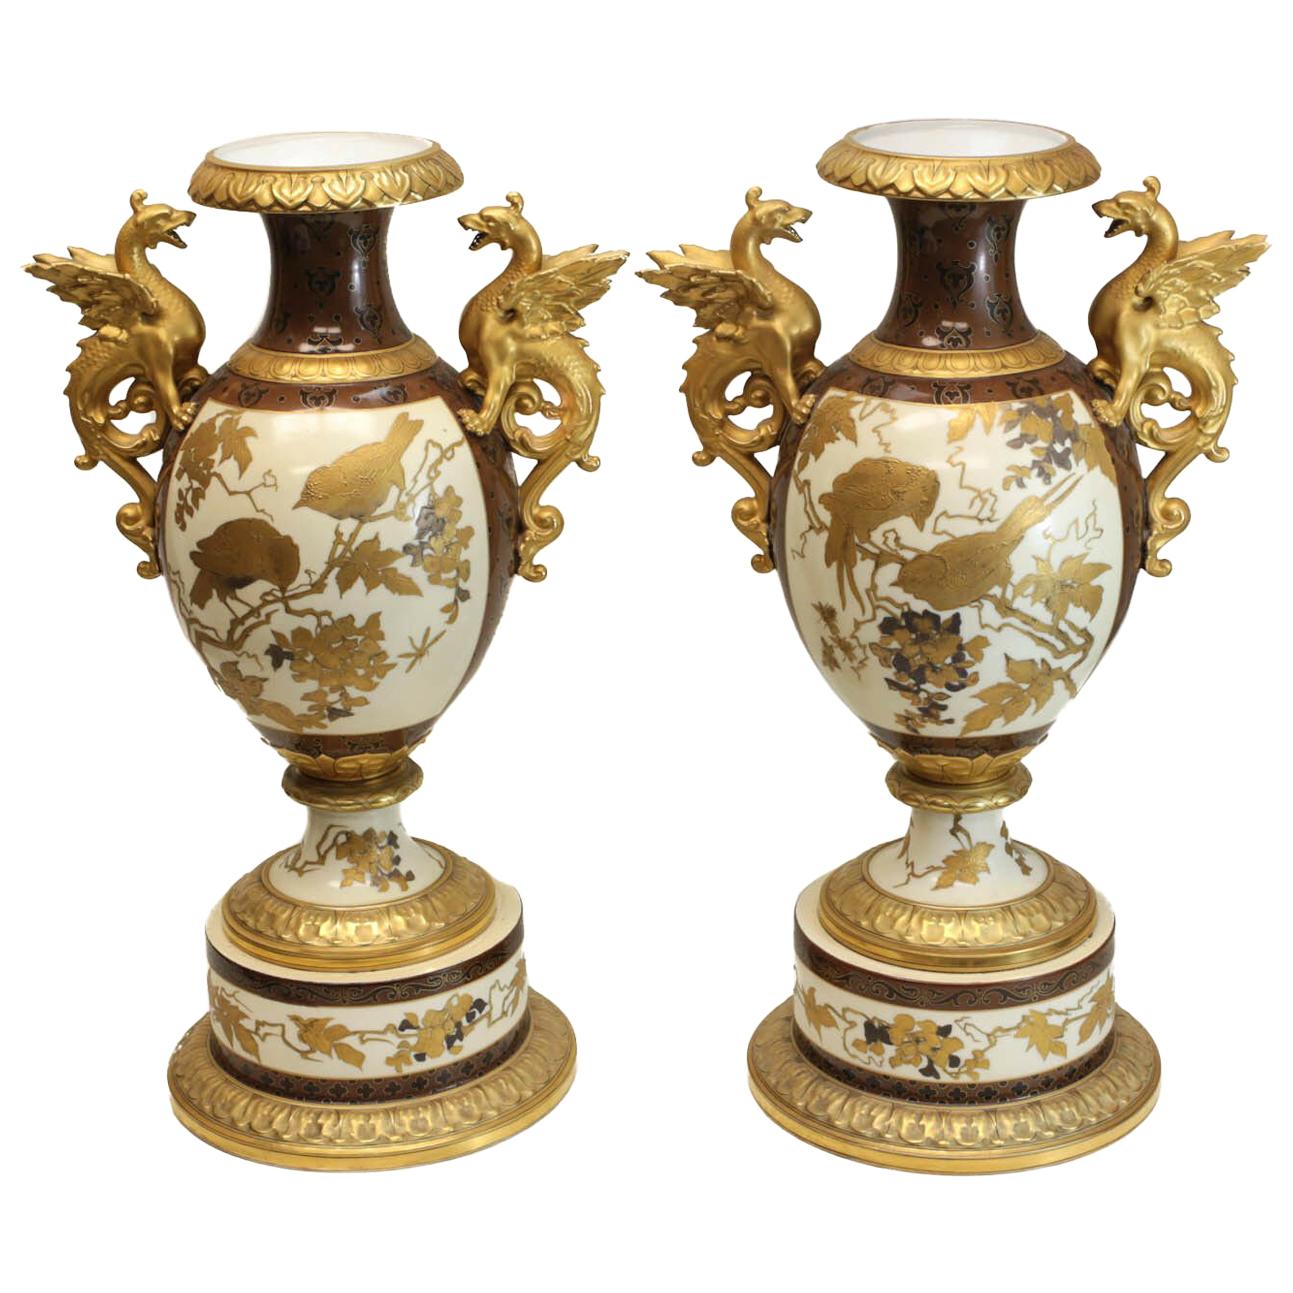 Pair of Pirkenhammer Porcelain Aesthetic Gold Encrusted Dragon Vases, circa 1880 For Sale